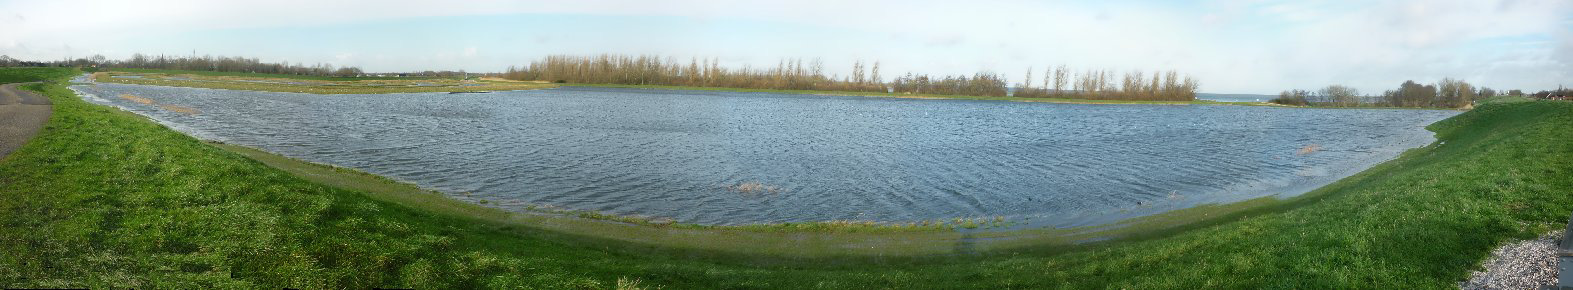 2011-2012 2014 2015 (april) 2016 (februari) Figuur 3.19 Beeld van de weilanden in het oostelijk deel van de Koopmanspolder in de uitgangssituatie en in de jaren gedurende de waterproef.